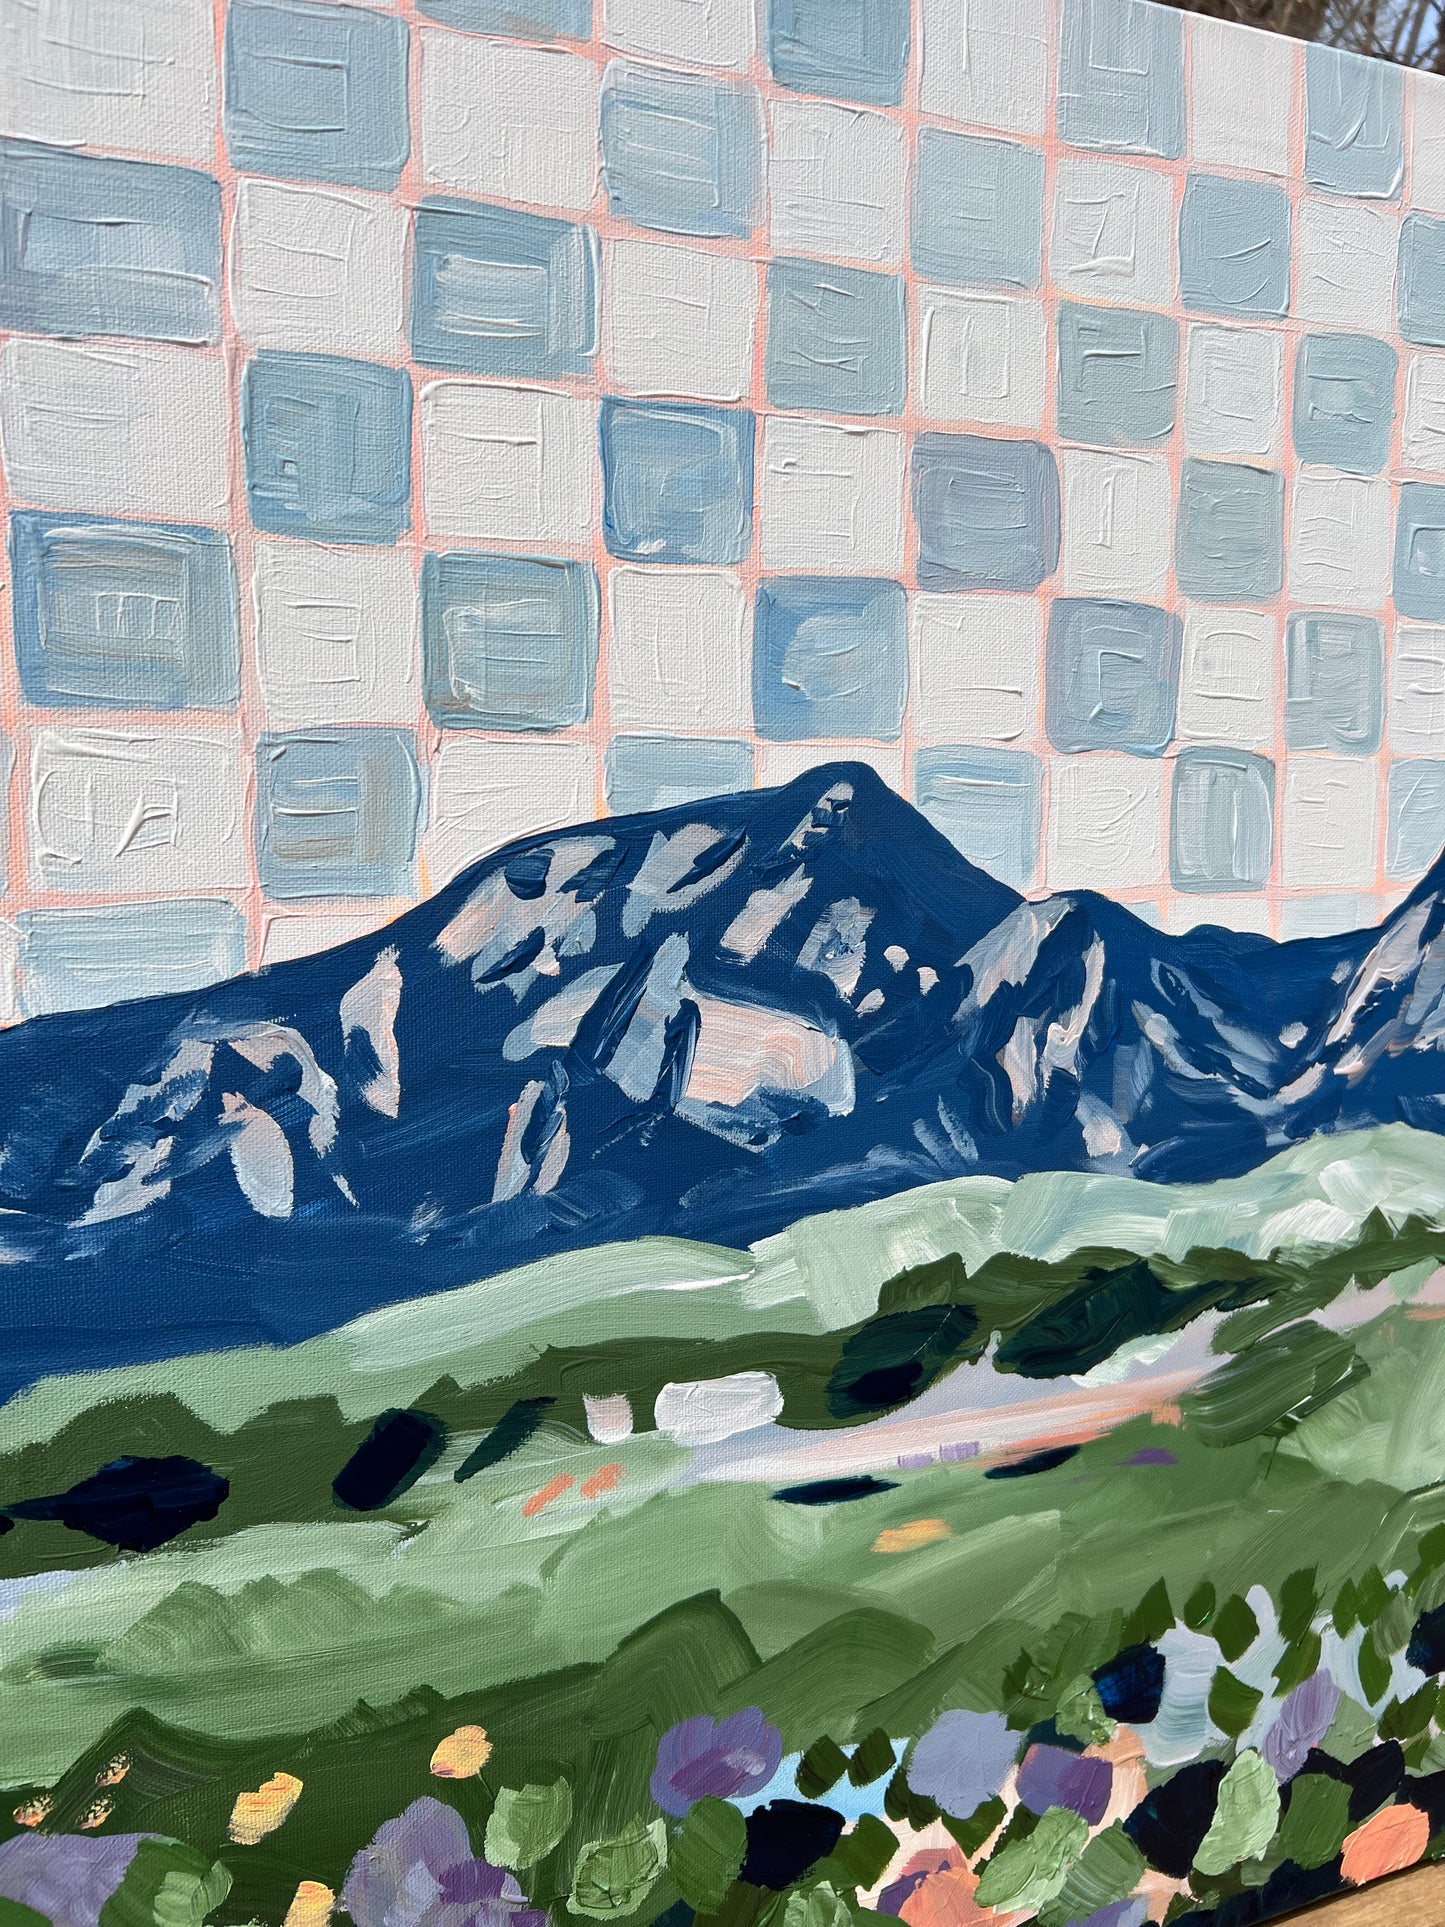 “Colorado Blue” 2023 Checkerboard Rockies series